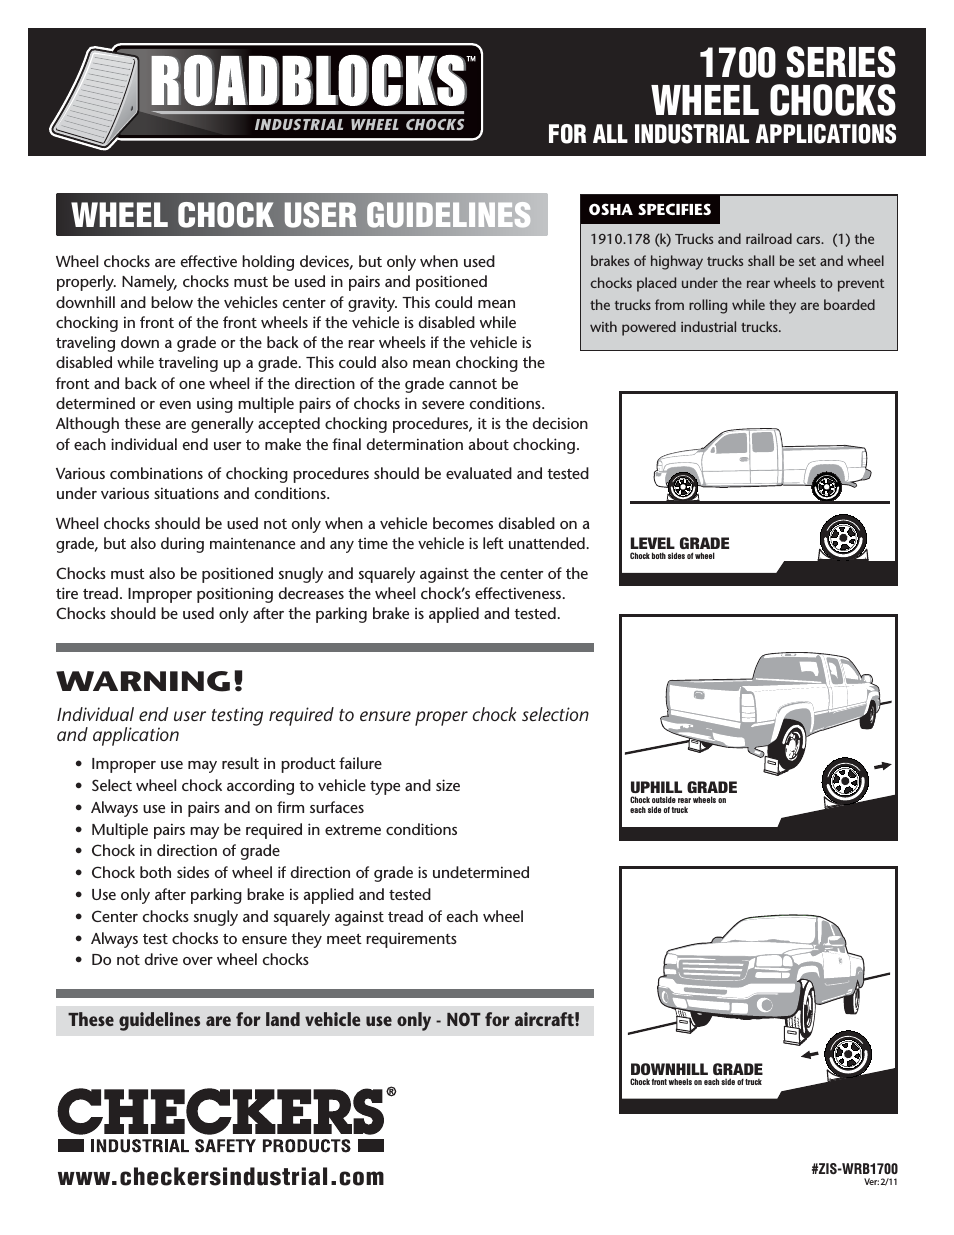 Roadblocks 1700 Wheel Chocks User Guidelines